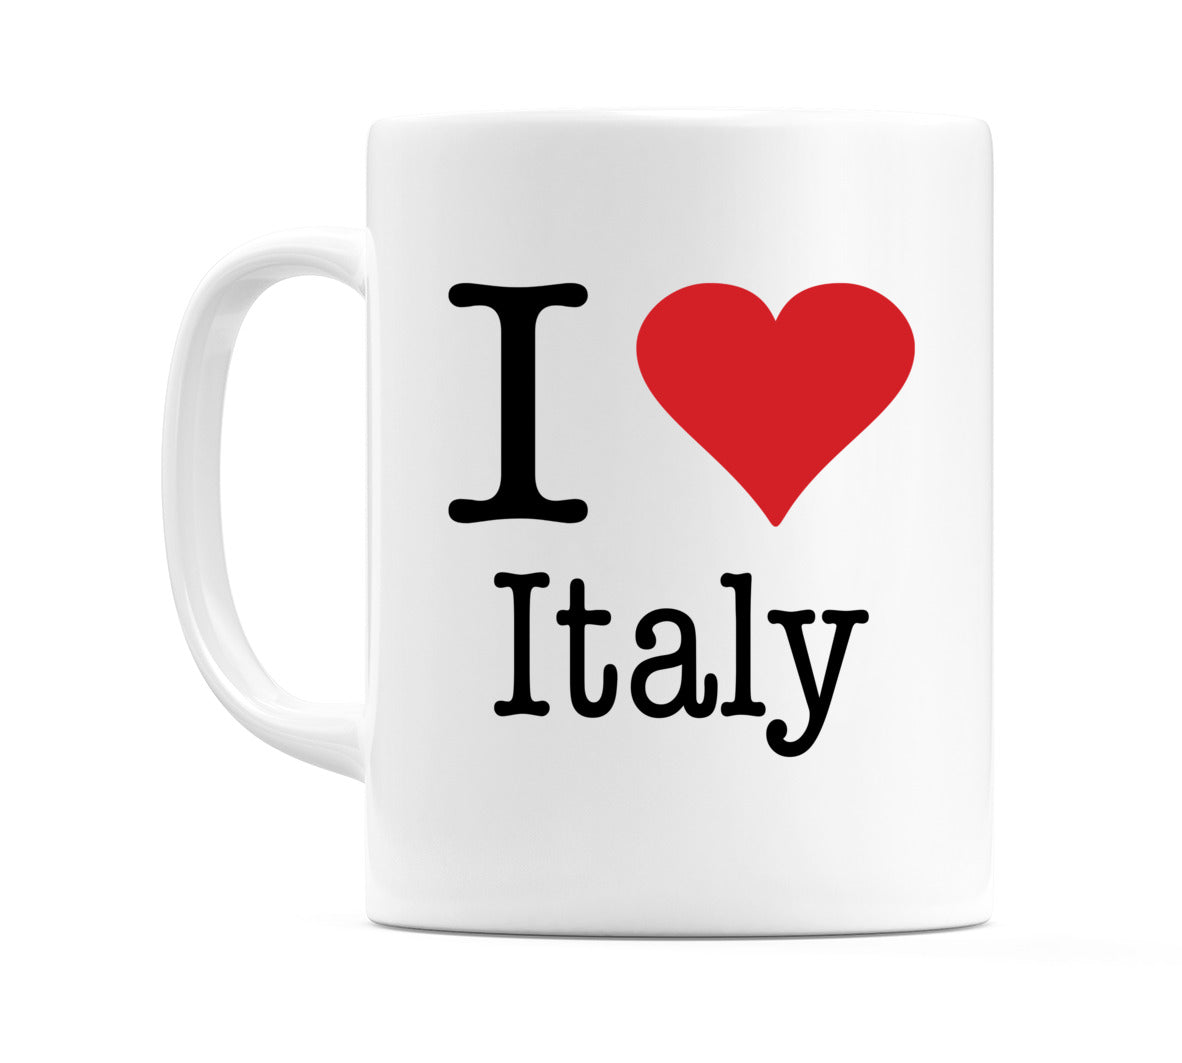 I Love Italy Mug